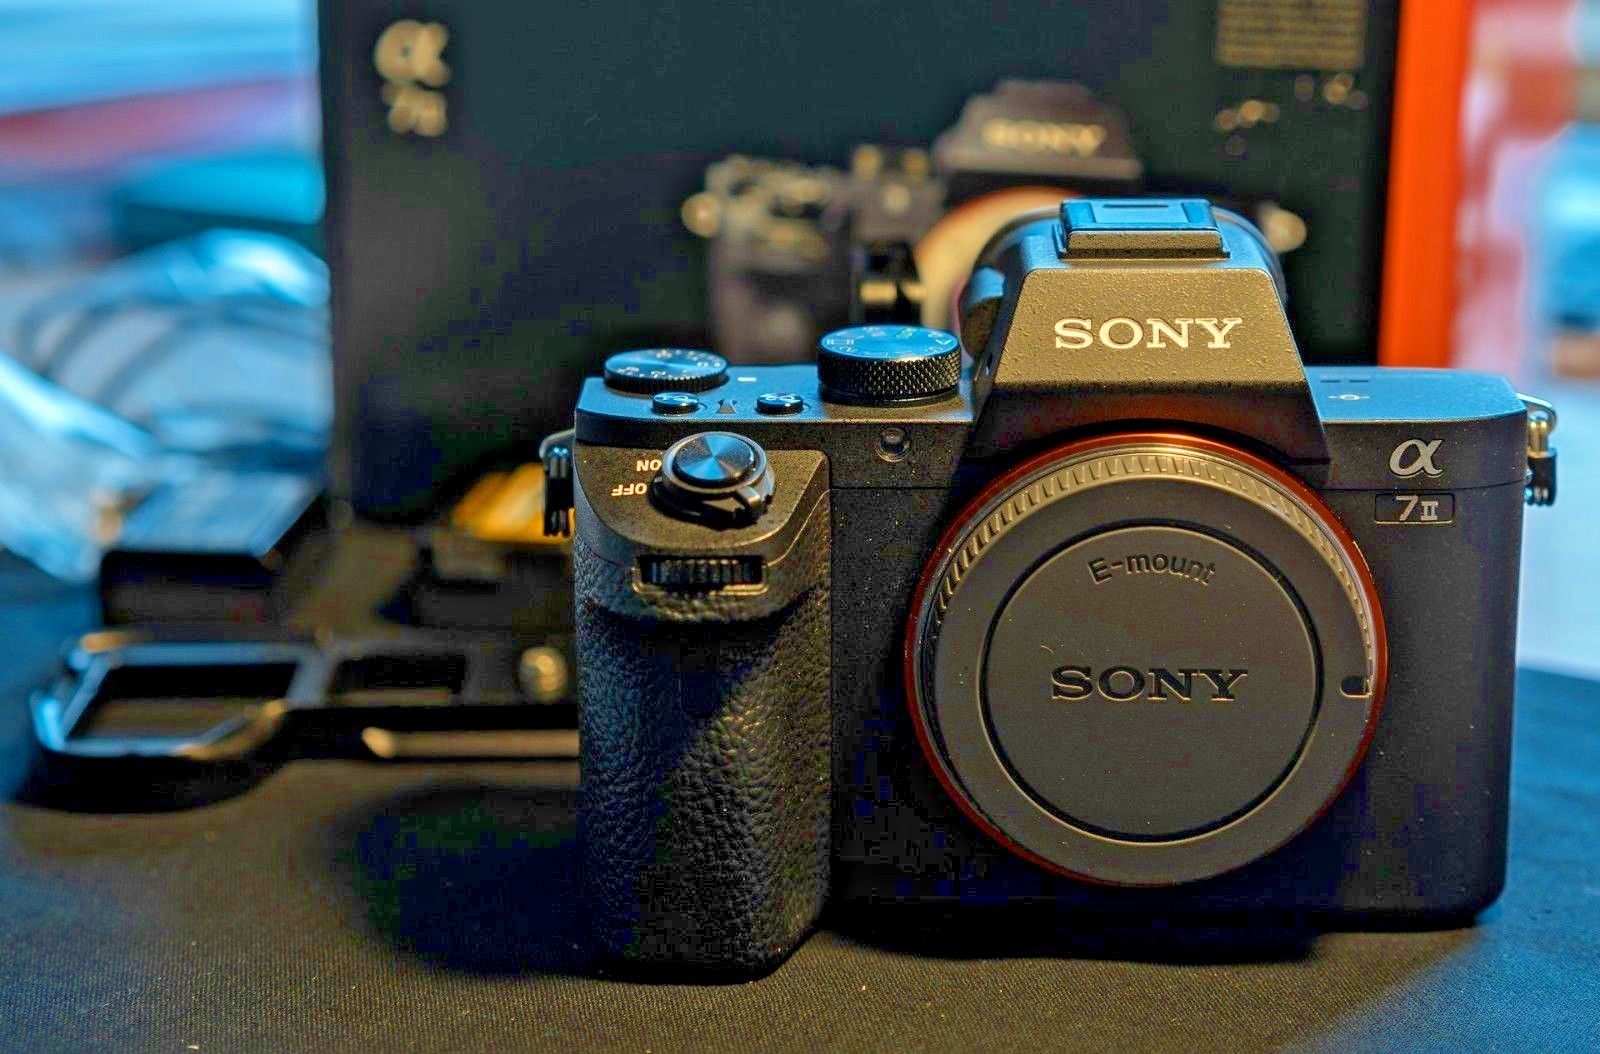 Sony Alpha ILCE-7M2 24.3 MP Digitalkamera - Schwarz (Nur Gehäuse)